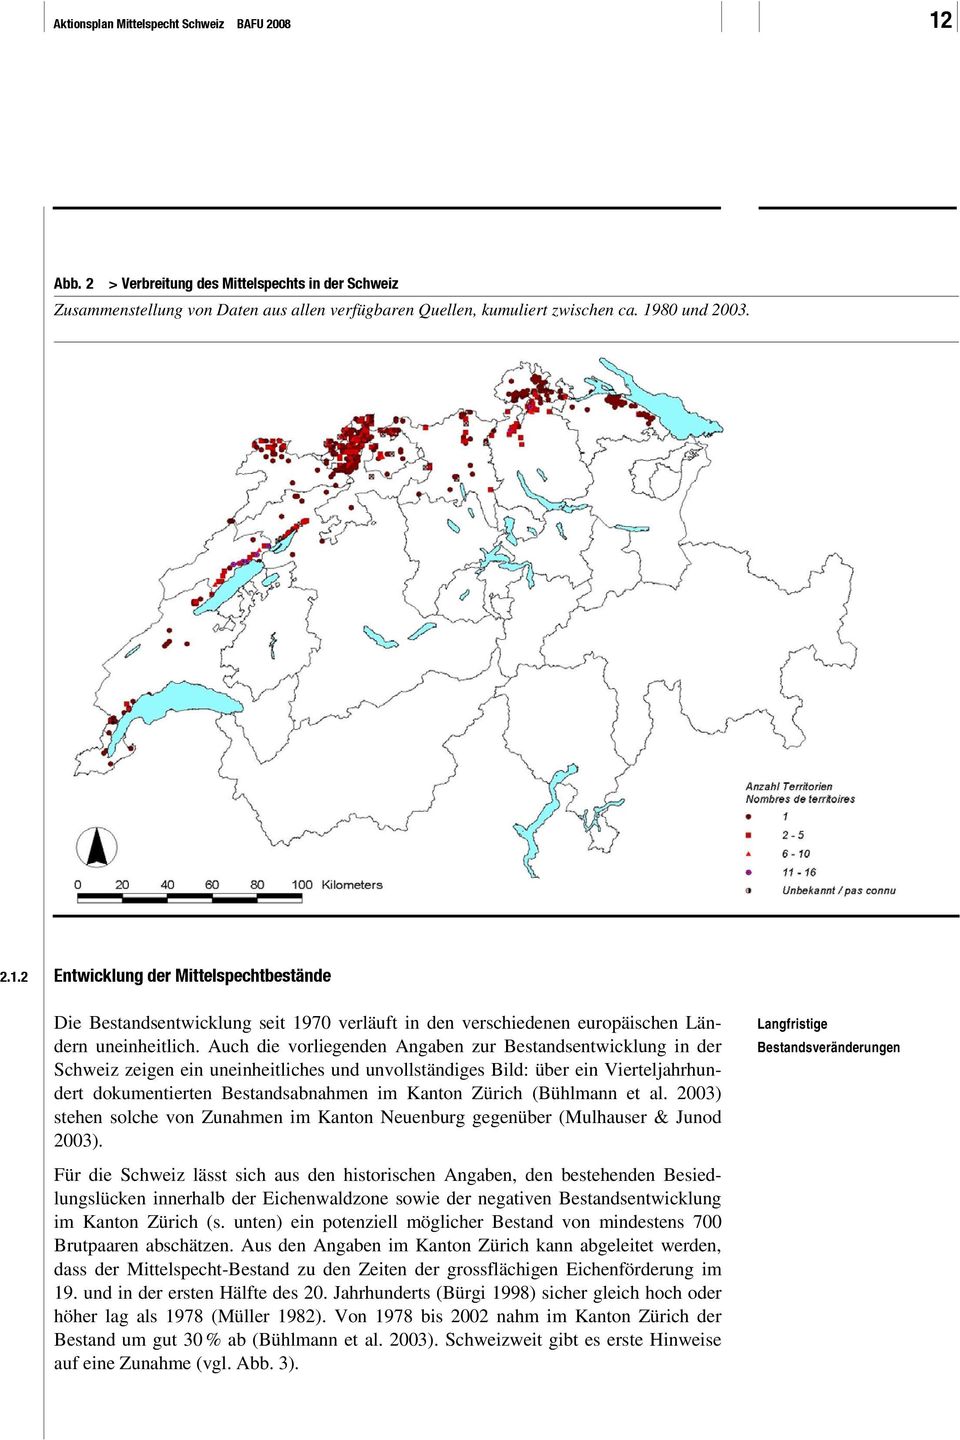 (Bühlmann et al. 2003) stehen solche von Zunahmen im Kanton Neuenburg gegenüber (Mulhauser & Junod 2003).